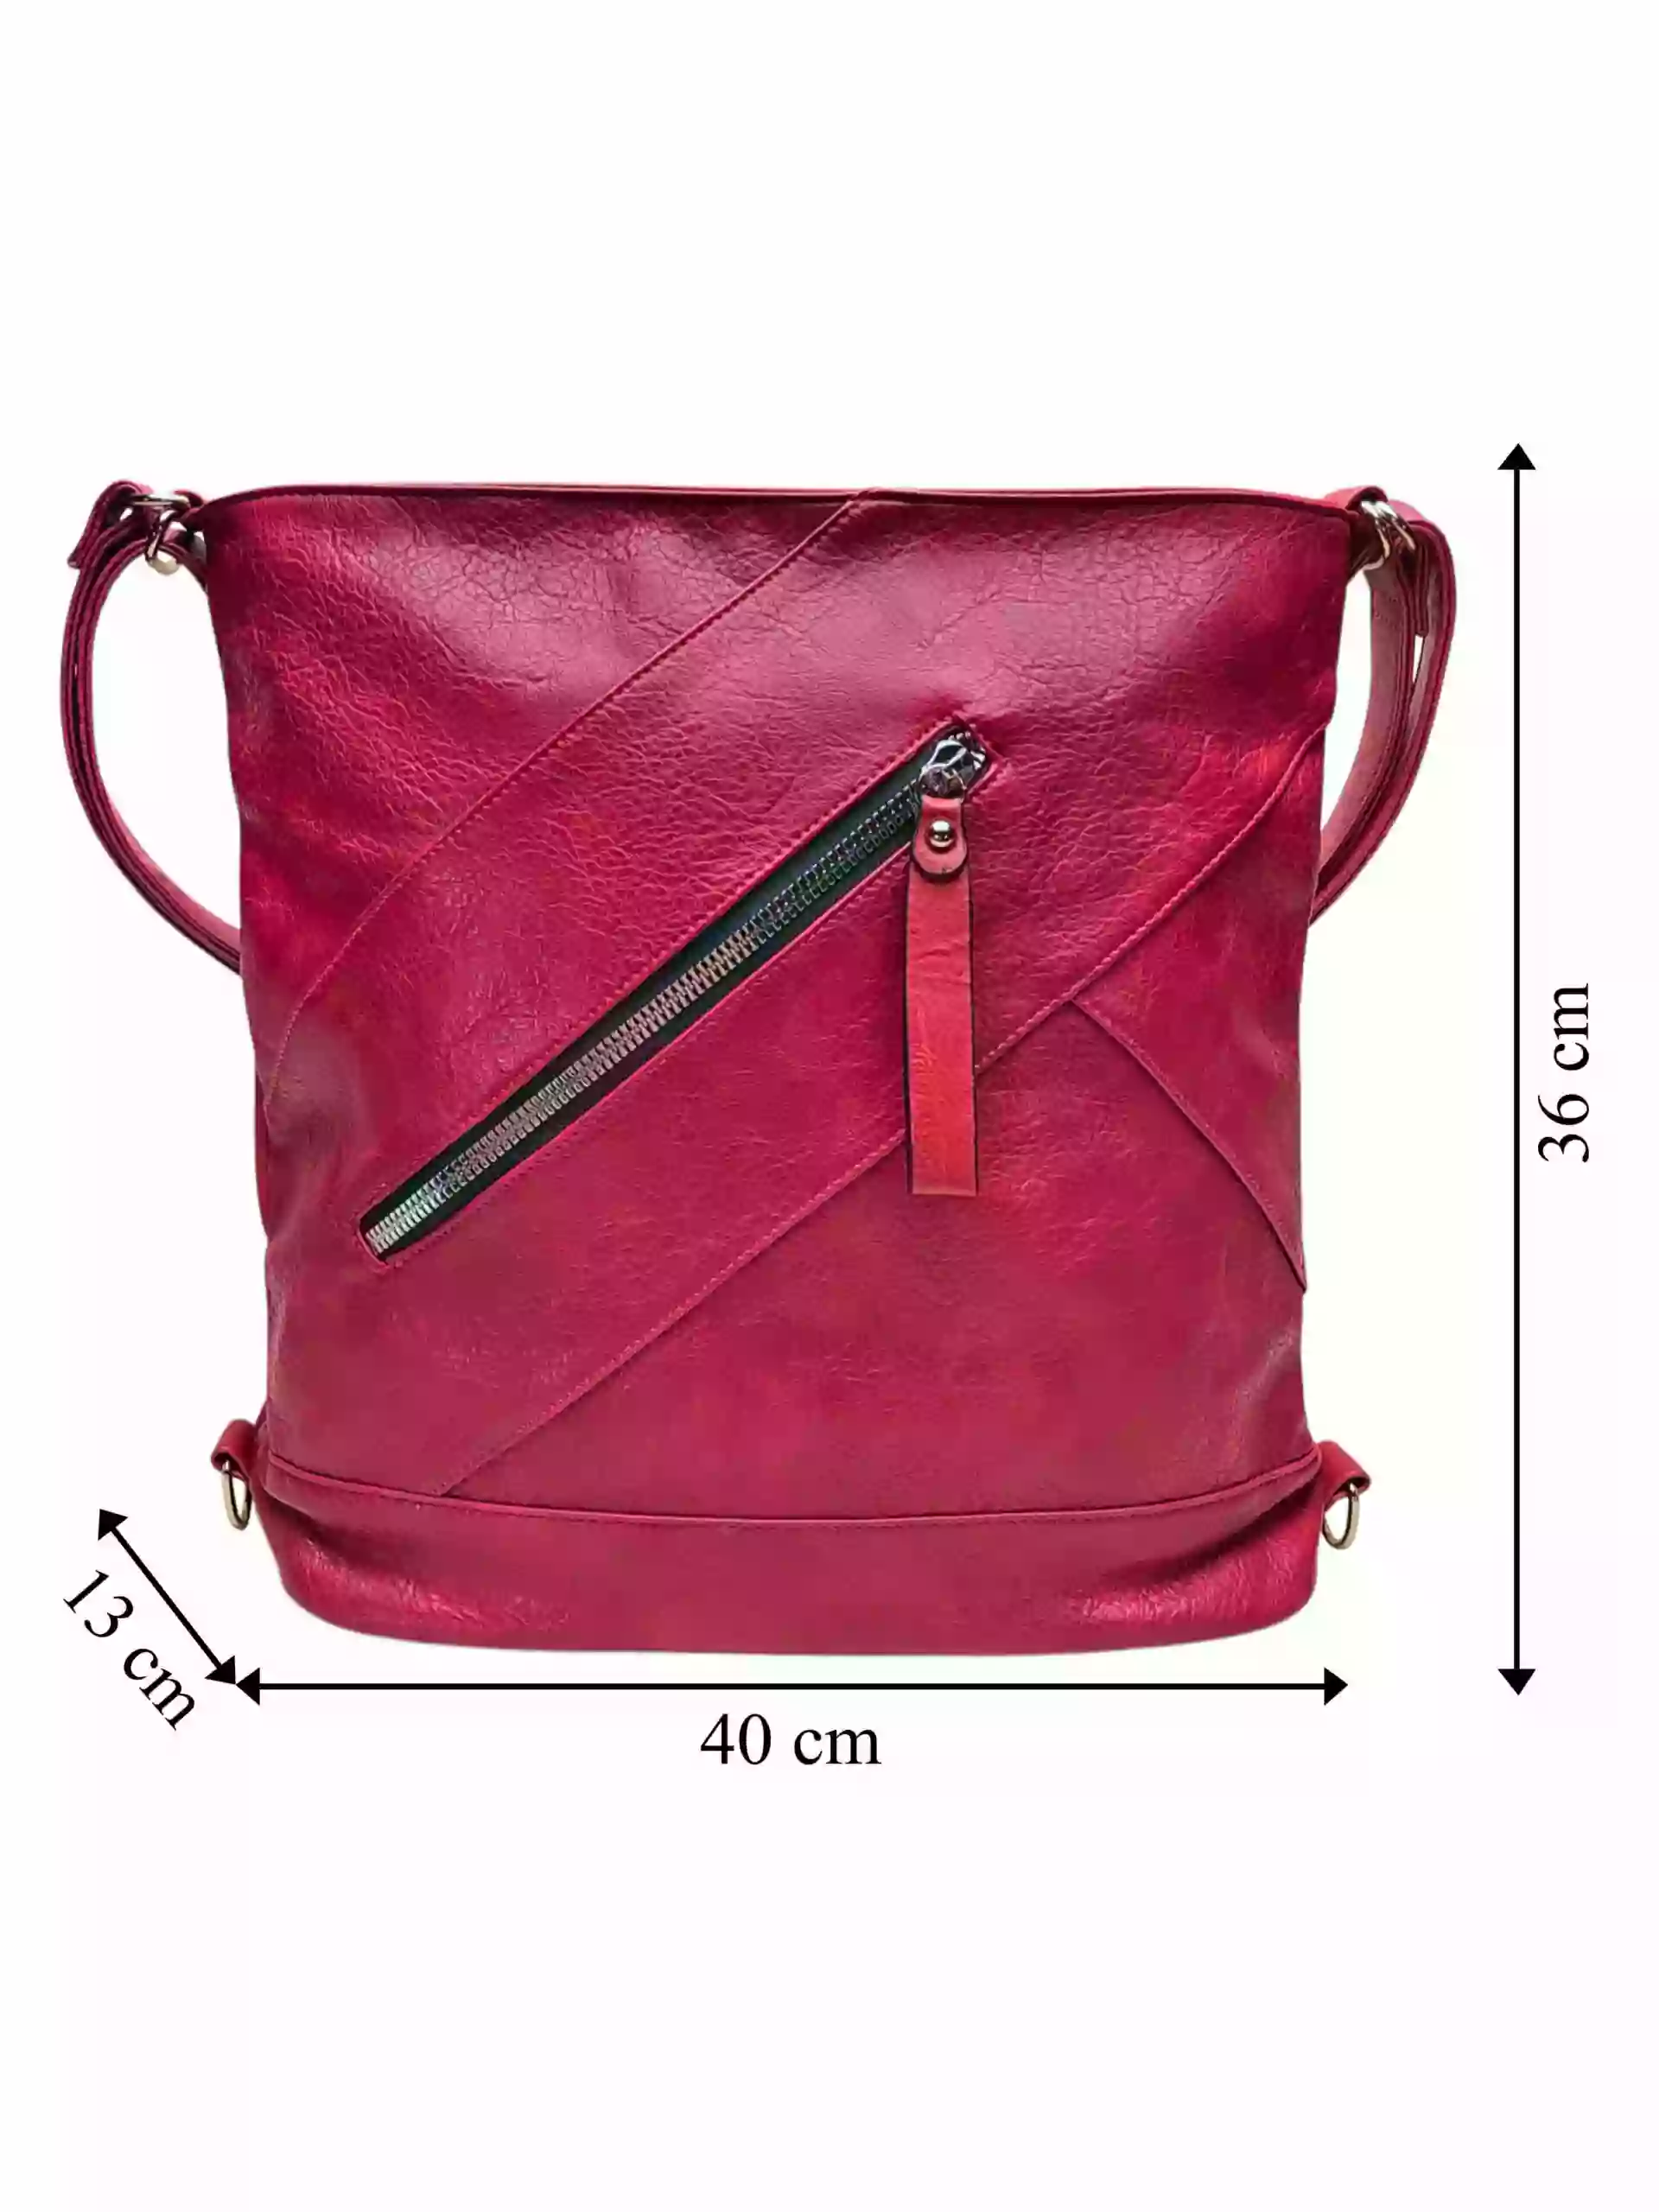 Velký vínový / bordó kabelko-batoh s kapsou, Tapple, H23904, přední strana kabelko-batohu s rozměry